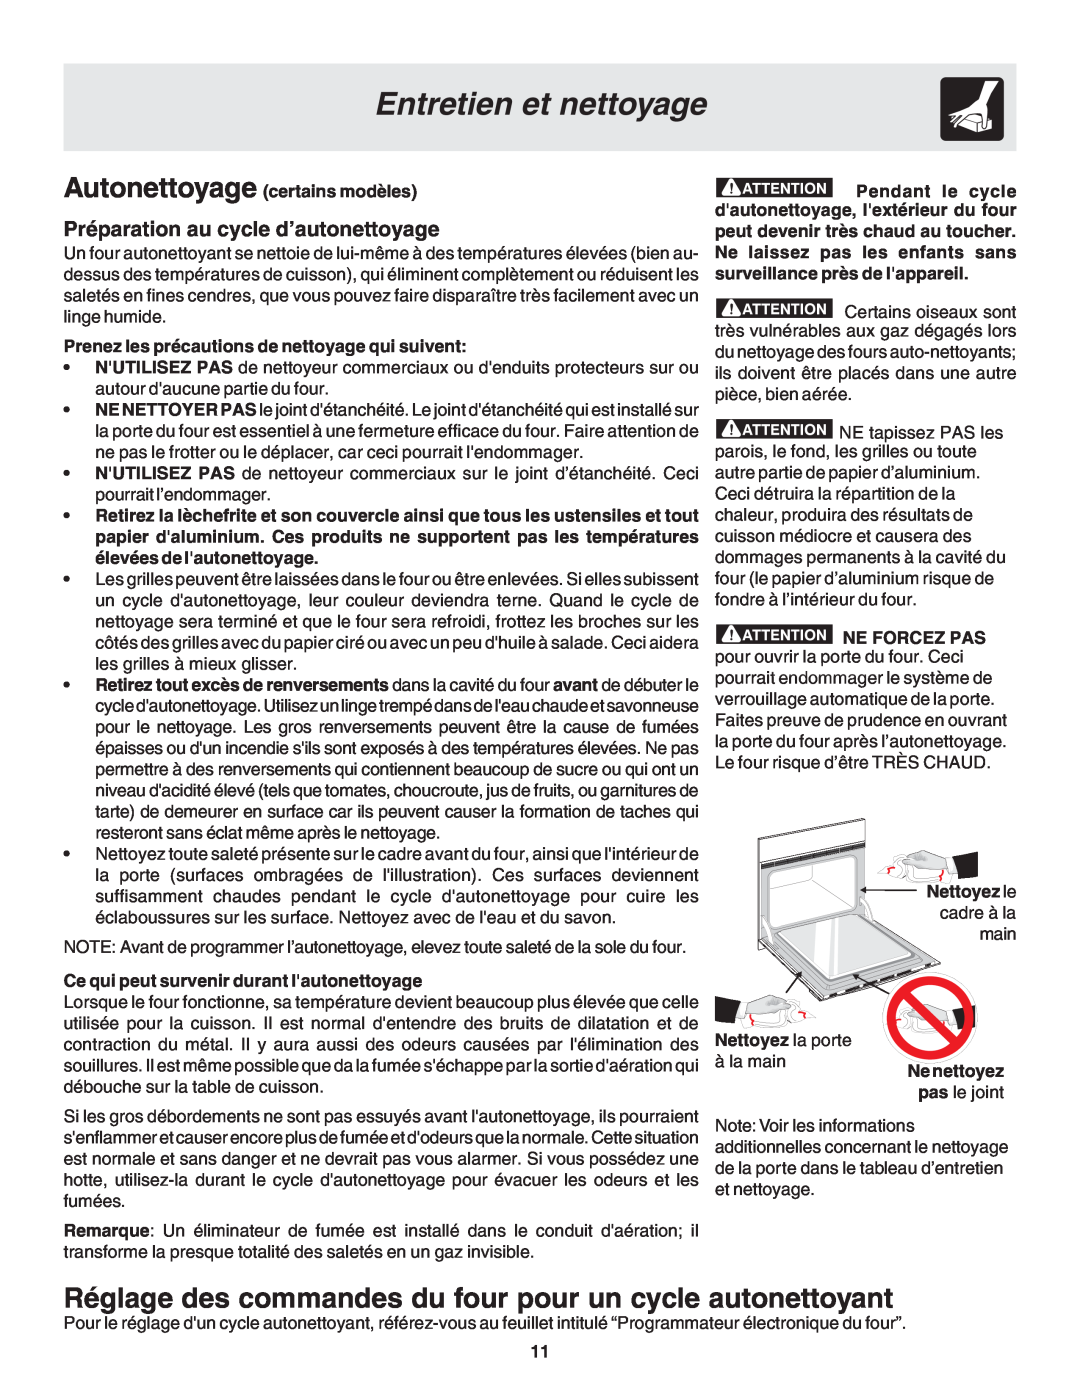 Frigidaire 318200929 warranty Réglage des commandes du four pour un cycle autonettoyant, Entretien et nettoyage 